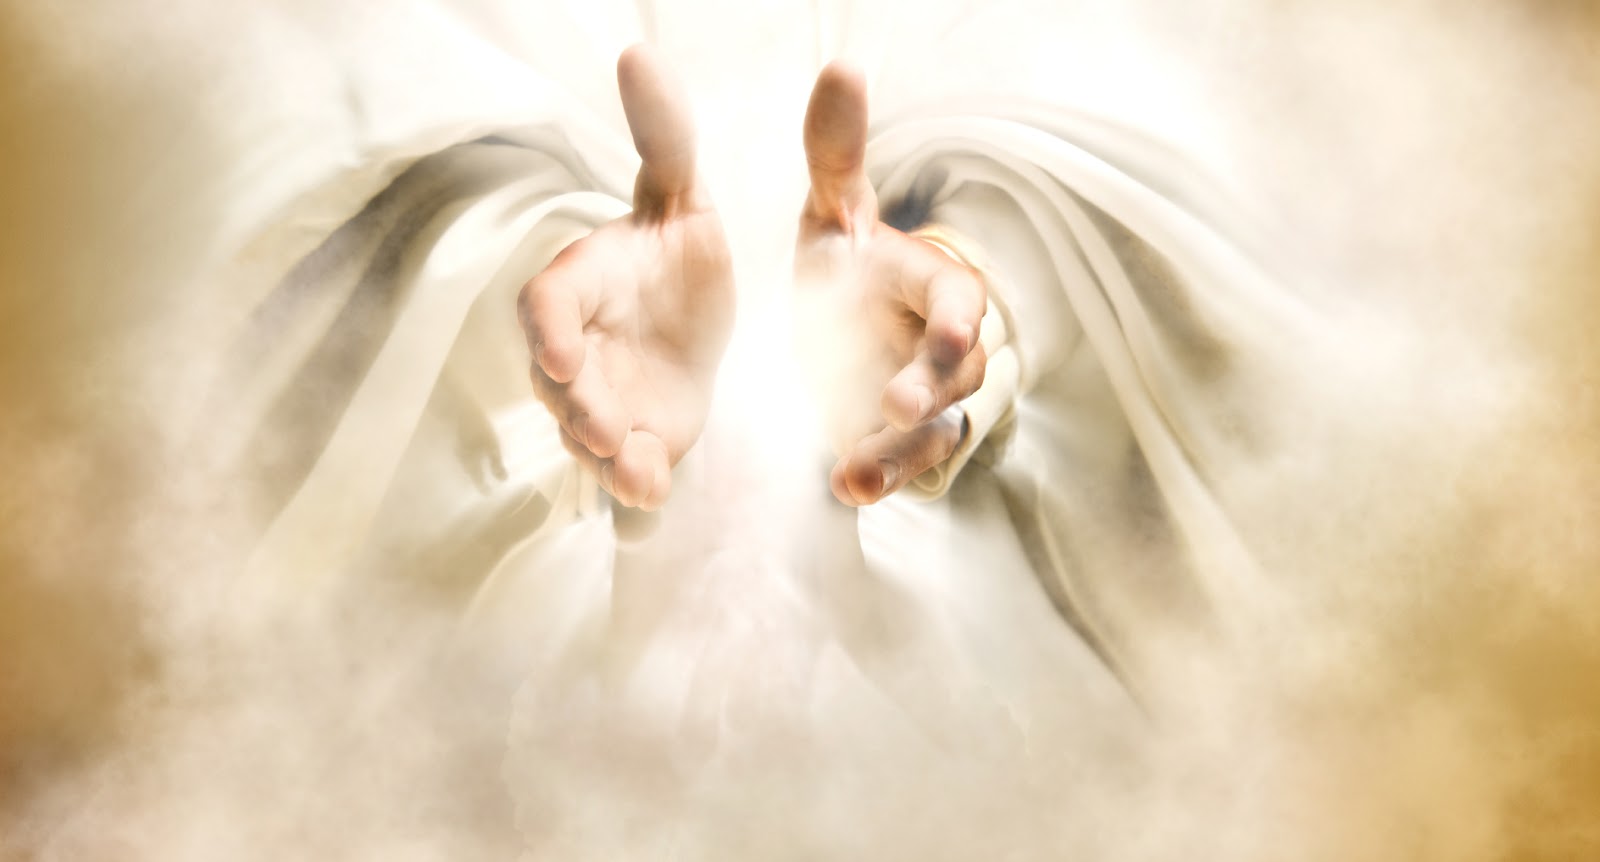 آج کا پیغام - دیکھو خداوند کا ہاتھ چھوٹا نہیں - خداوند کی مدد کی طلب - مسیح کا سہارا